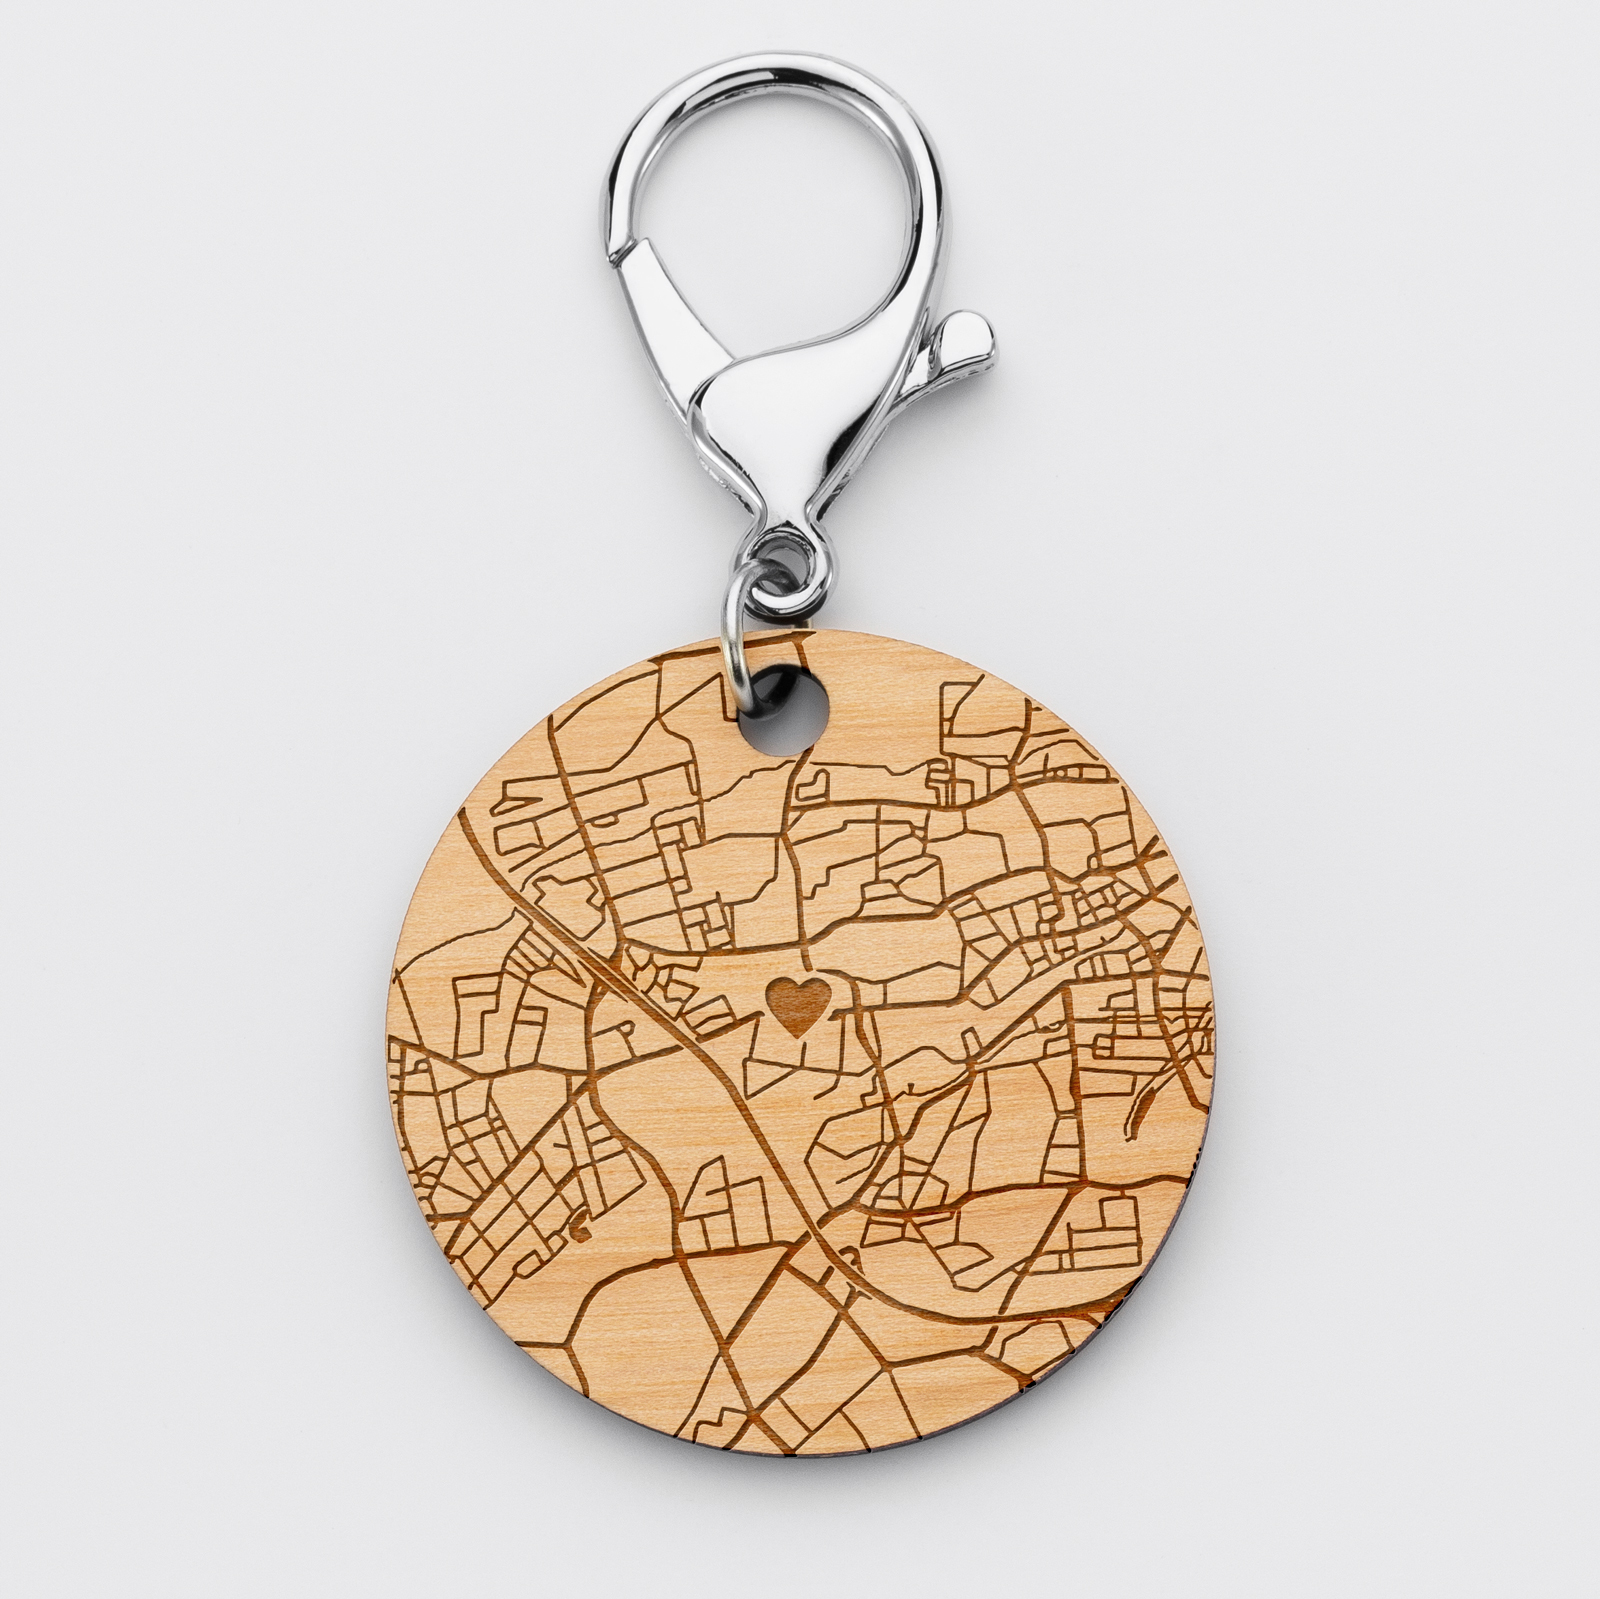 Porte-clés gravé "Géo map" personnalisé bois médaille 50 mm ronde |  HappyBulle